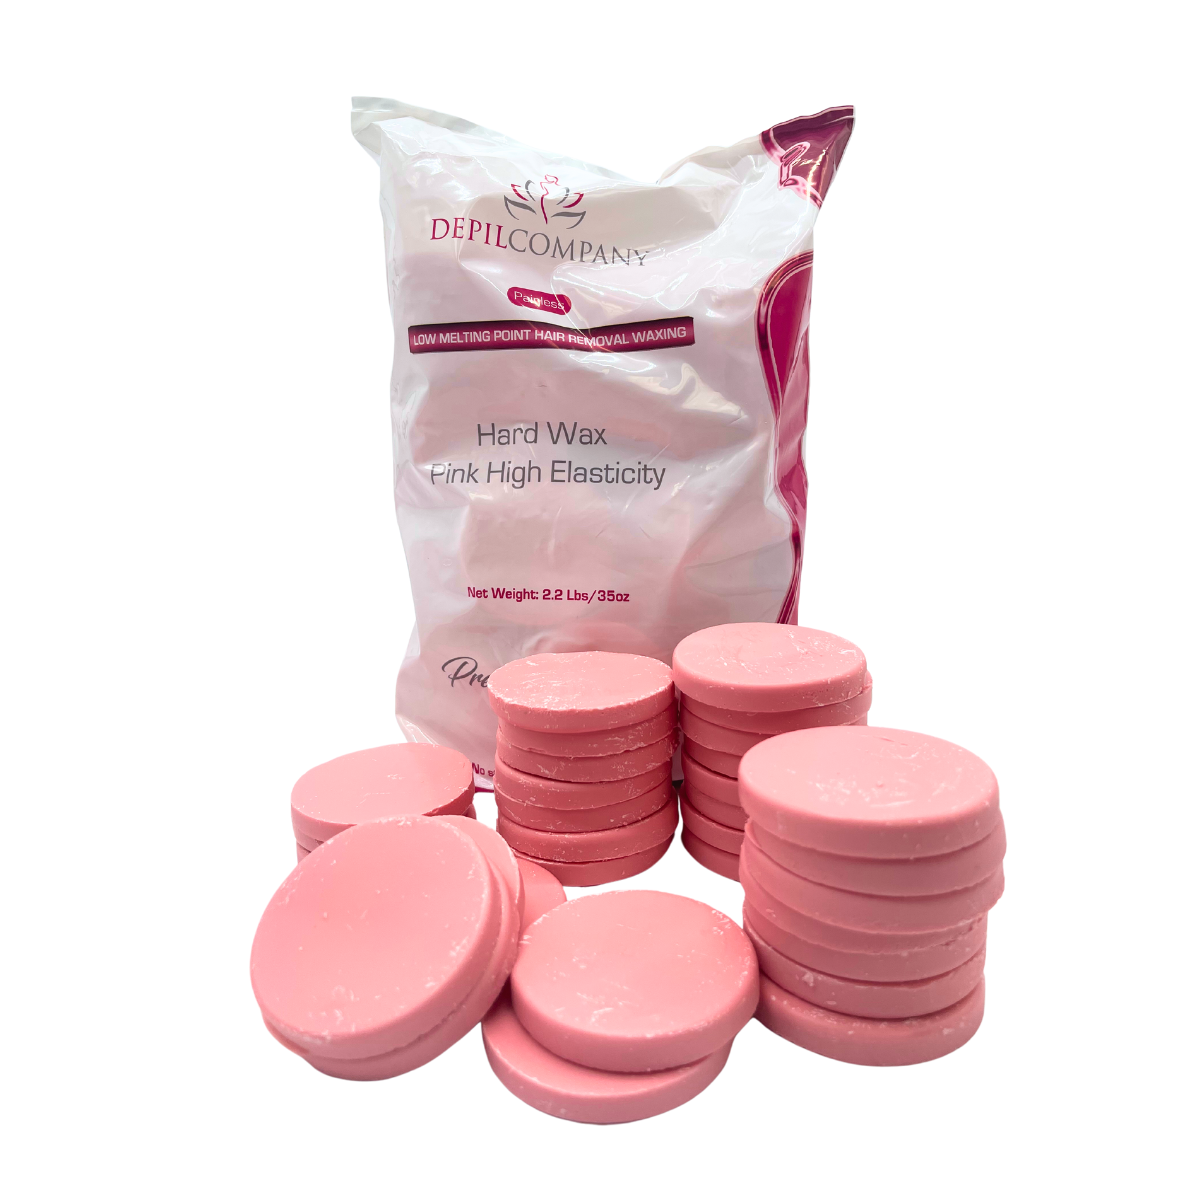 Depilcompany Hard Wax Pink – Cera dura profesional de alto rendimiento con ingredientes activos especiales – 2.2 lbs. (3 UND)